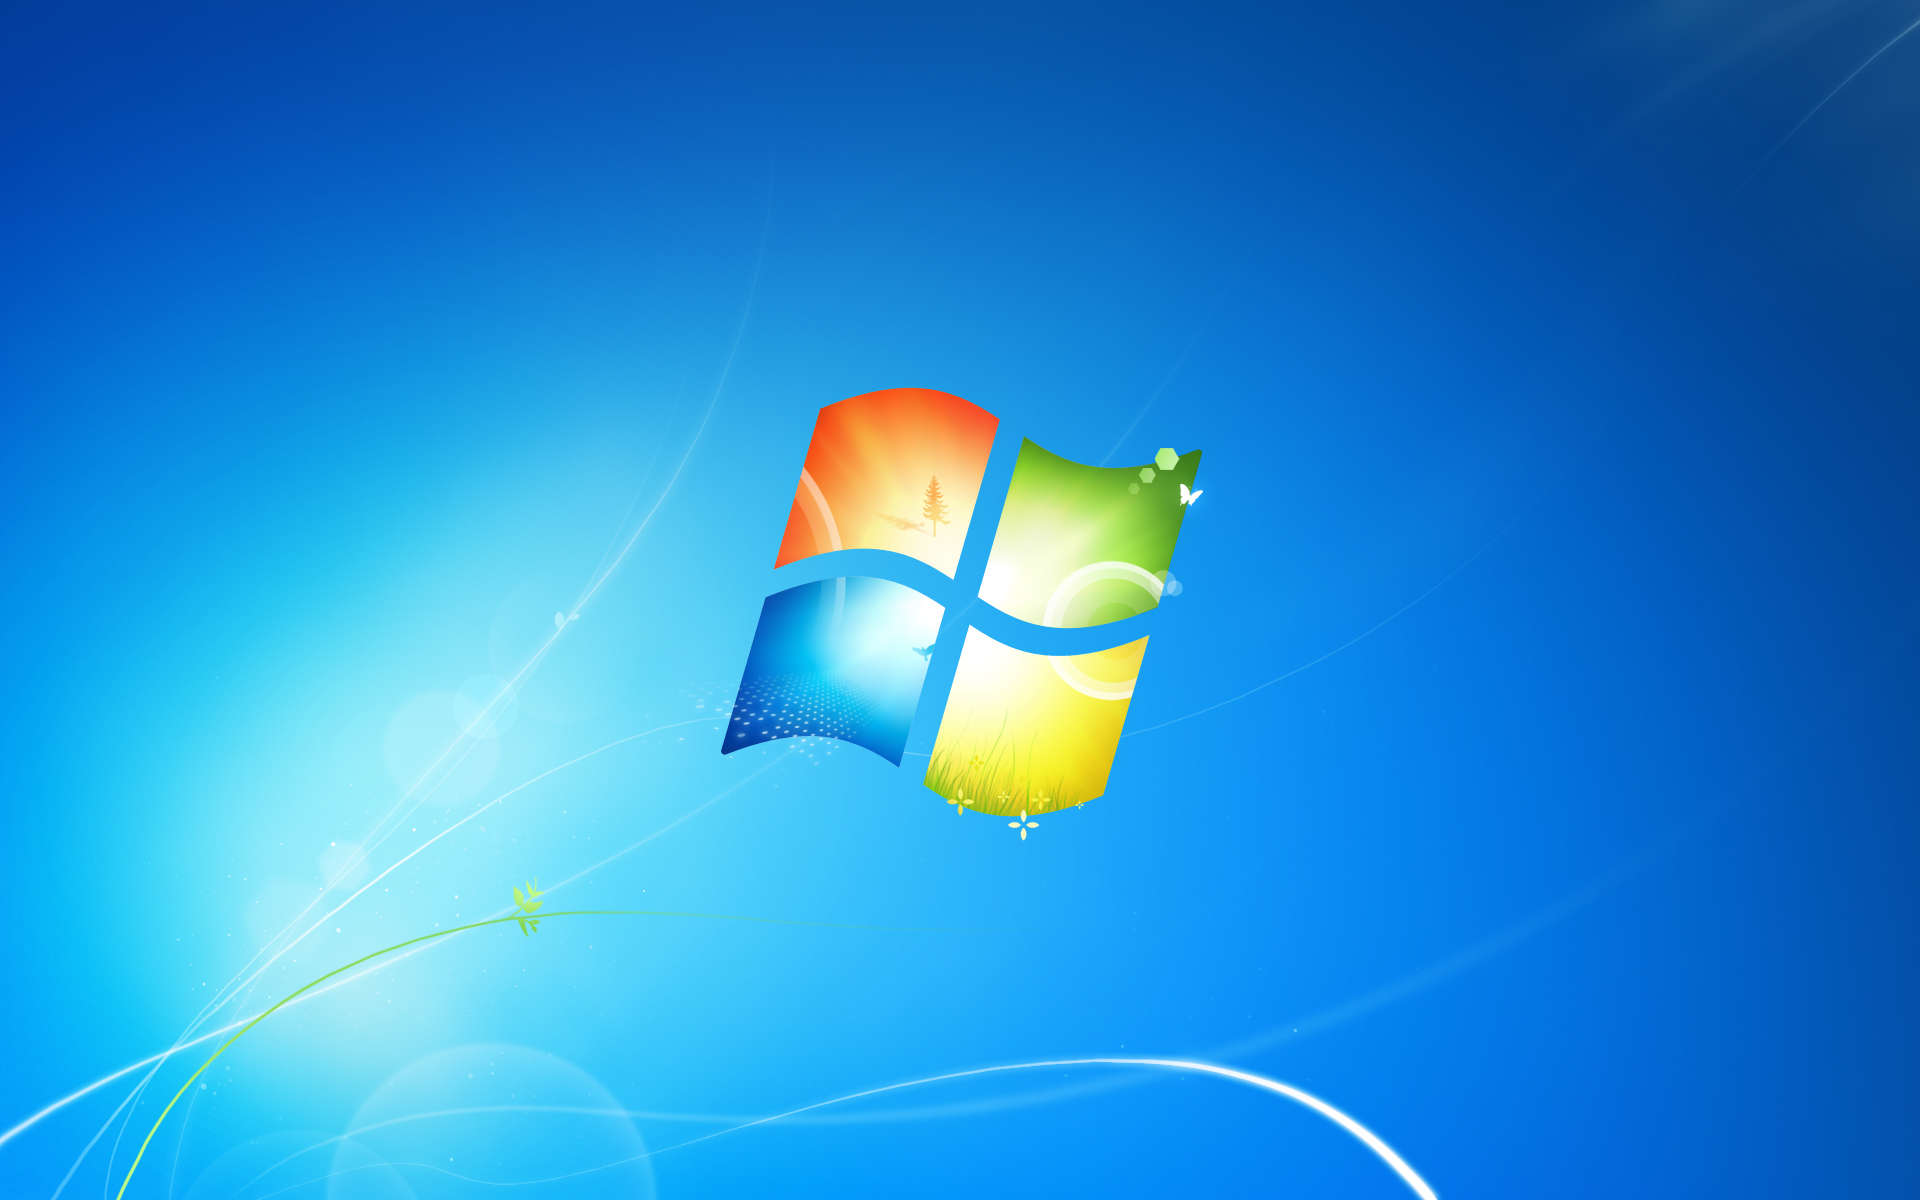 Windows 7: Login automatico all’avvio del sistema (Batch)